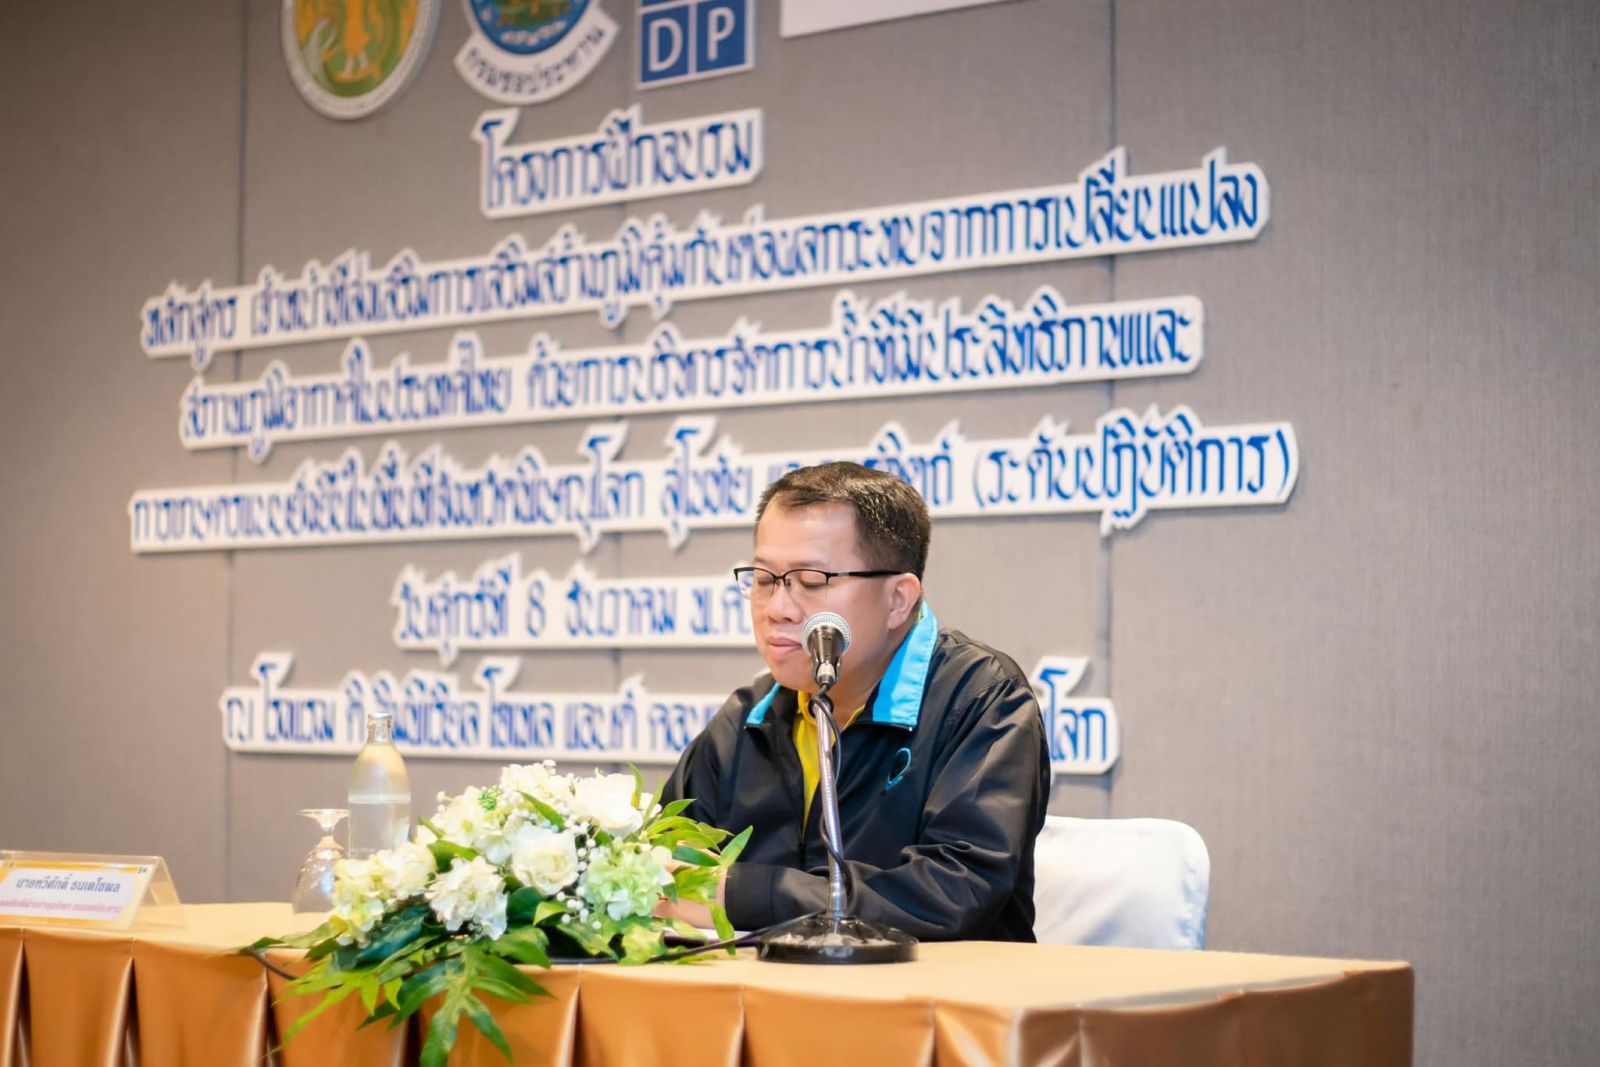 สศท.2 ร่วมบรรยาย “การเปลี่ยนแปลงสภาพภูมิอากาศ ฯลฯ และการปรับตัวของภาคเกษตรไทย” วันที่ 2